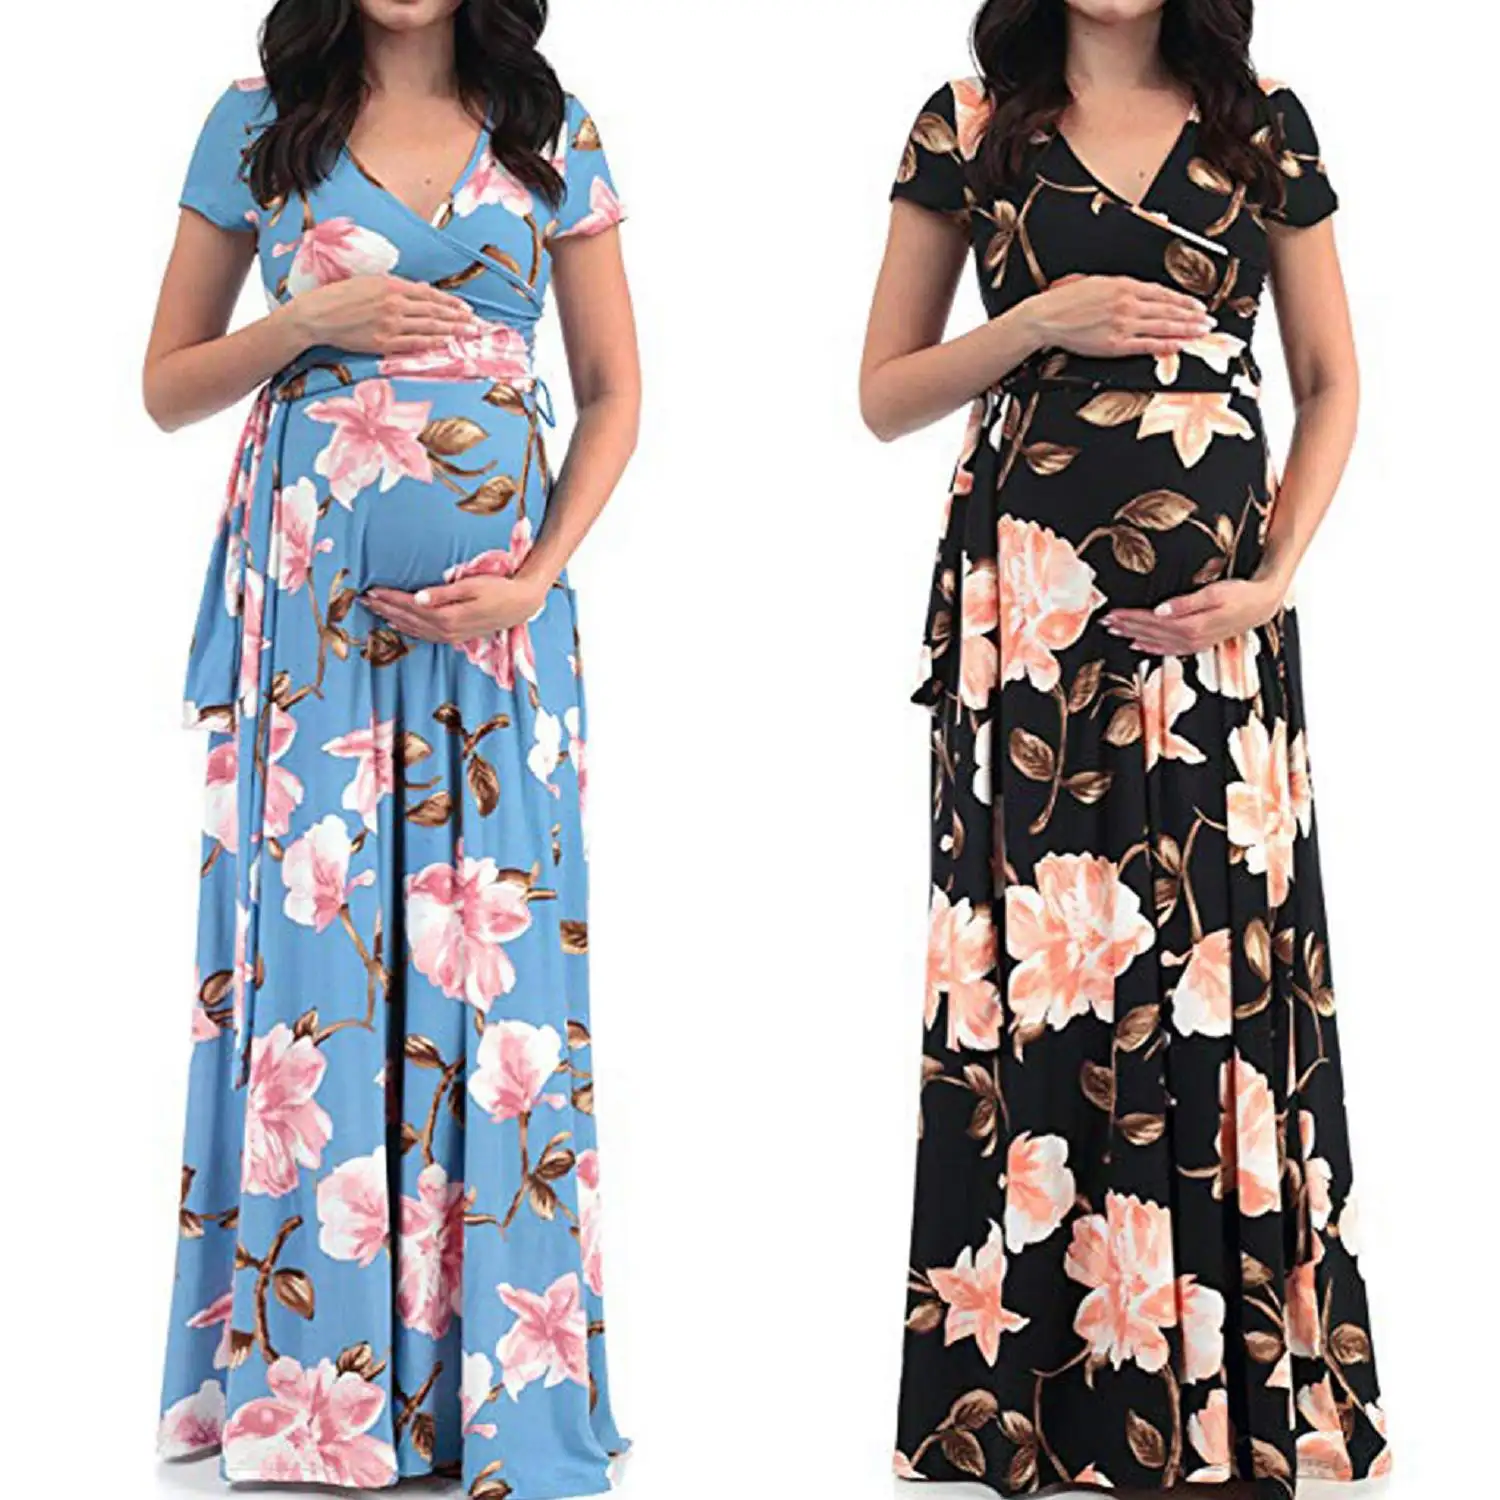 Fuyu toptan kadınlar artı boyutu çiçek baskı hamile elbise kısa kollu yumuşak hamile elbiseleri kemer ile